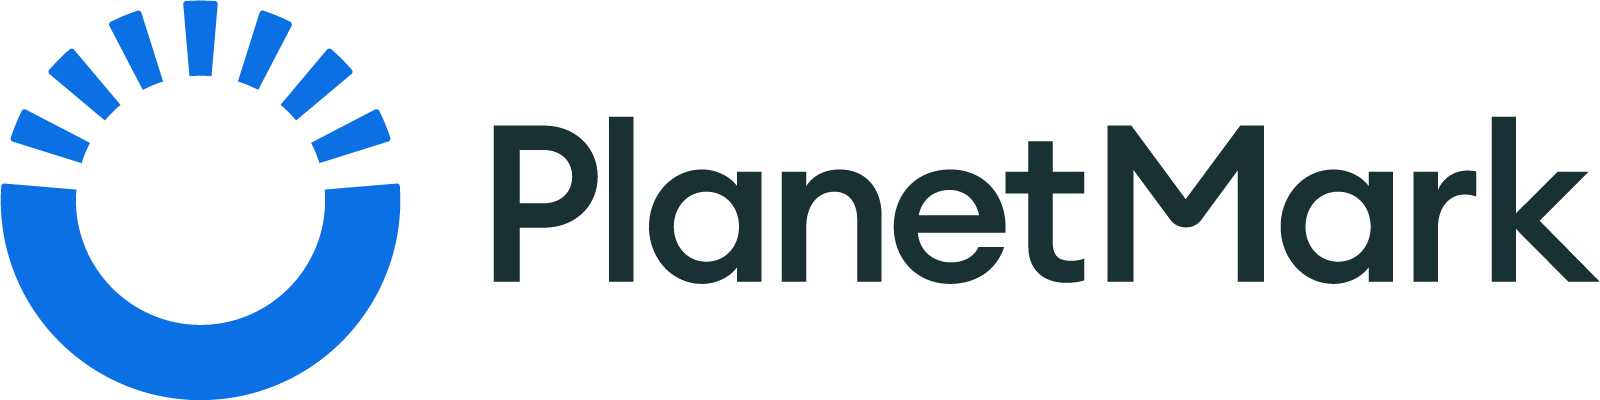 planetmark_full logo